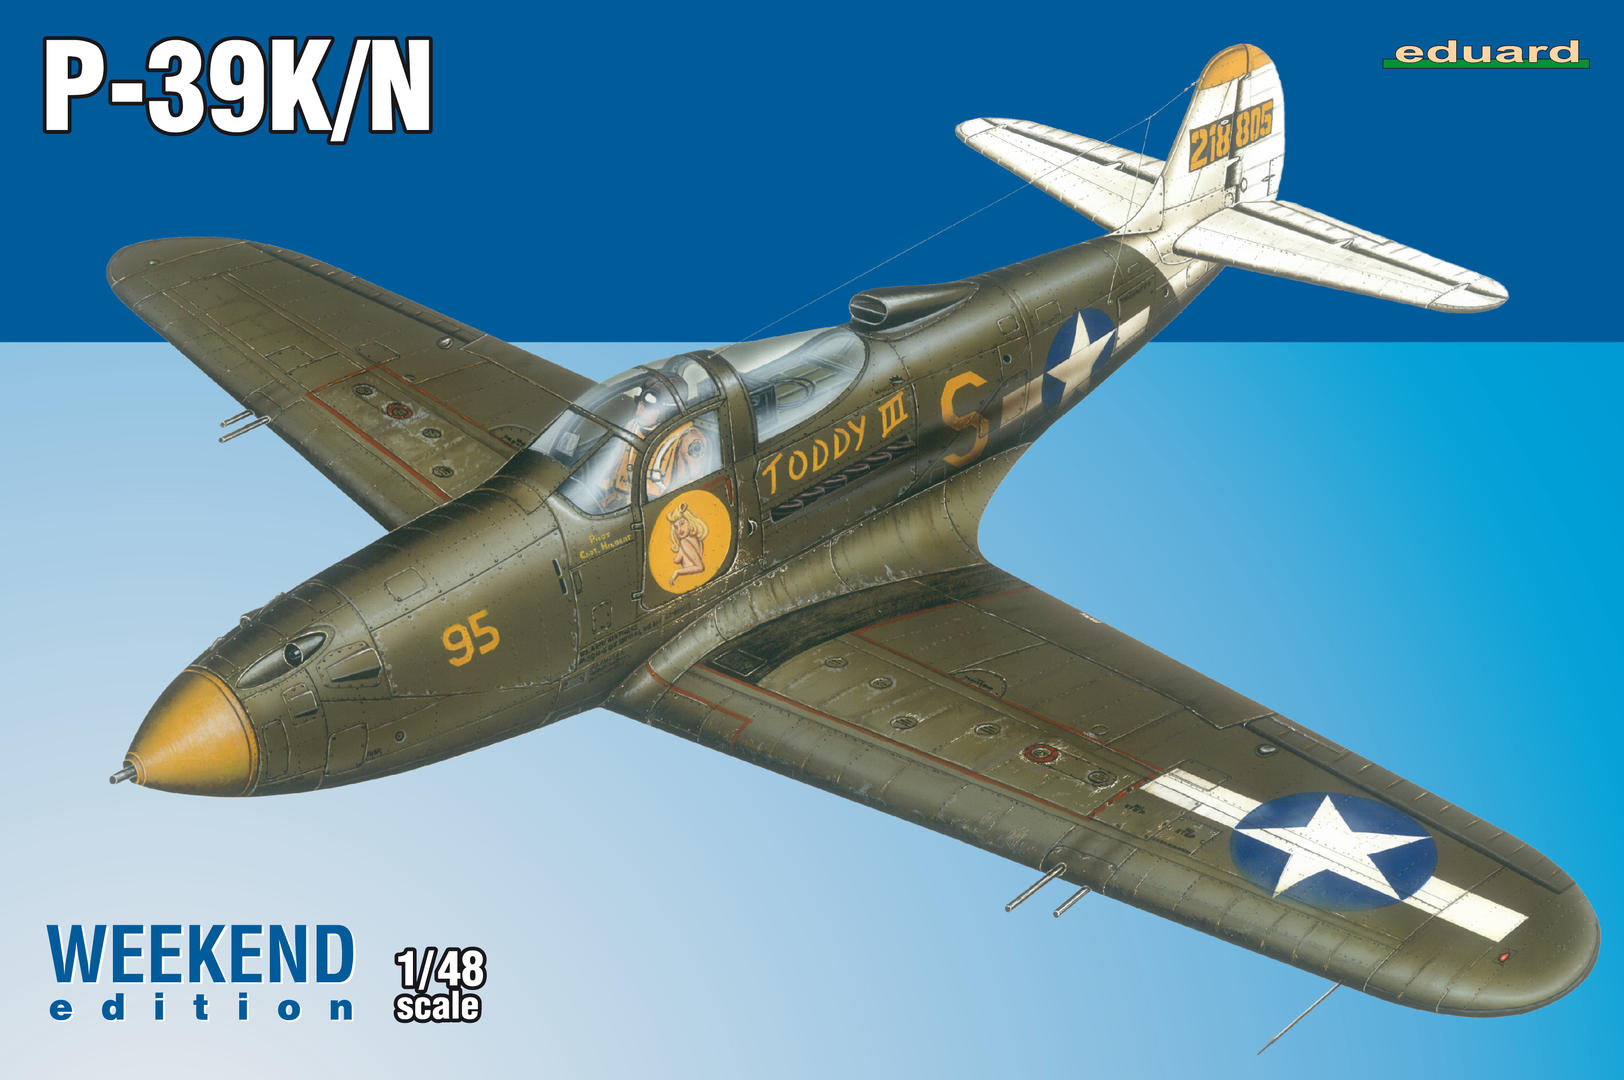 3984161 P-39K/ N Weekend Edition in 1:48 Eduard Plastic Kits